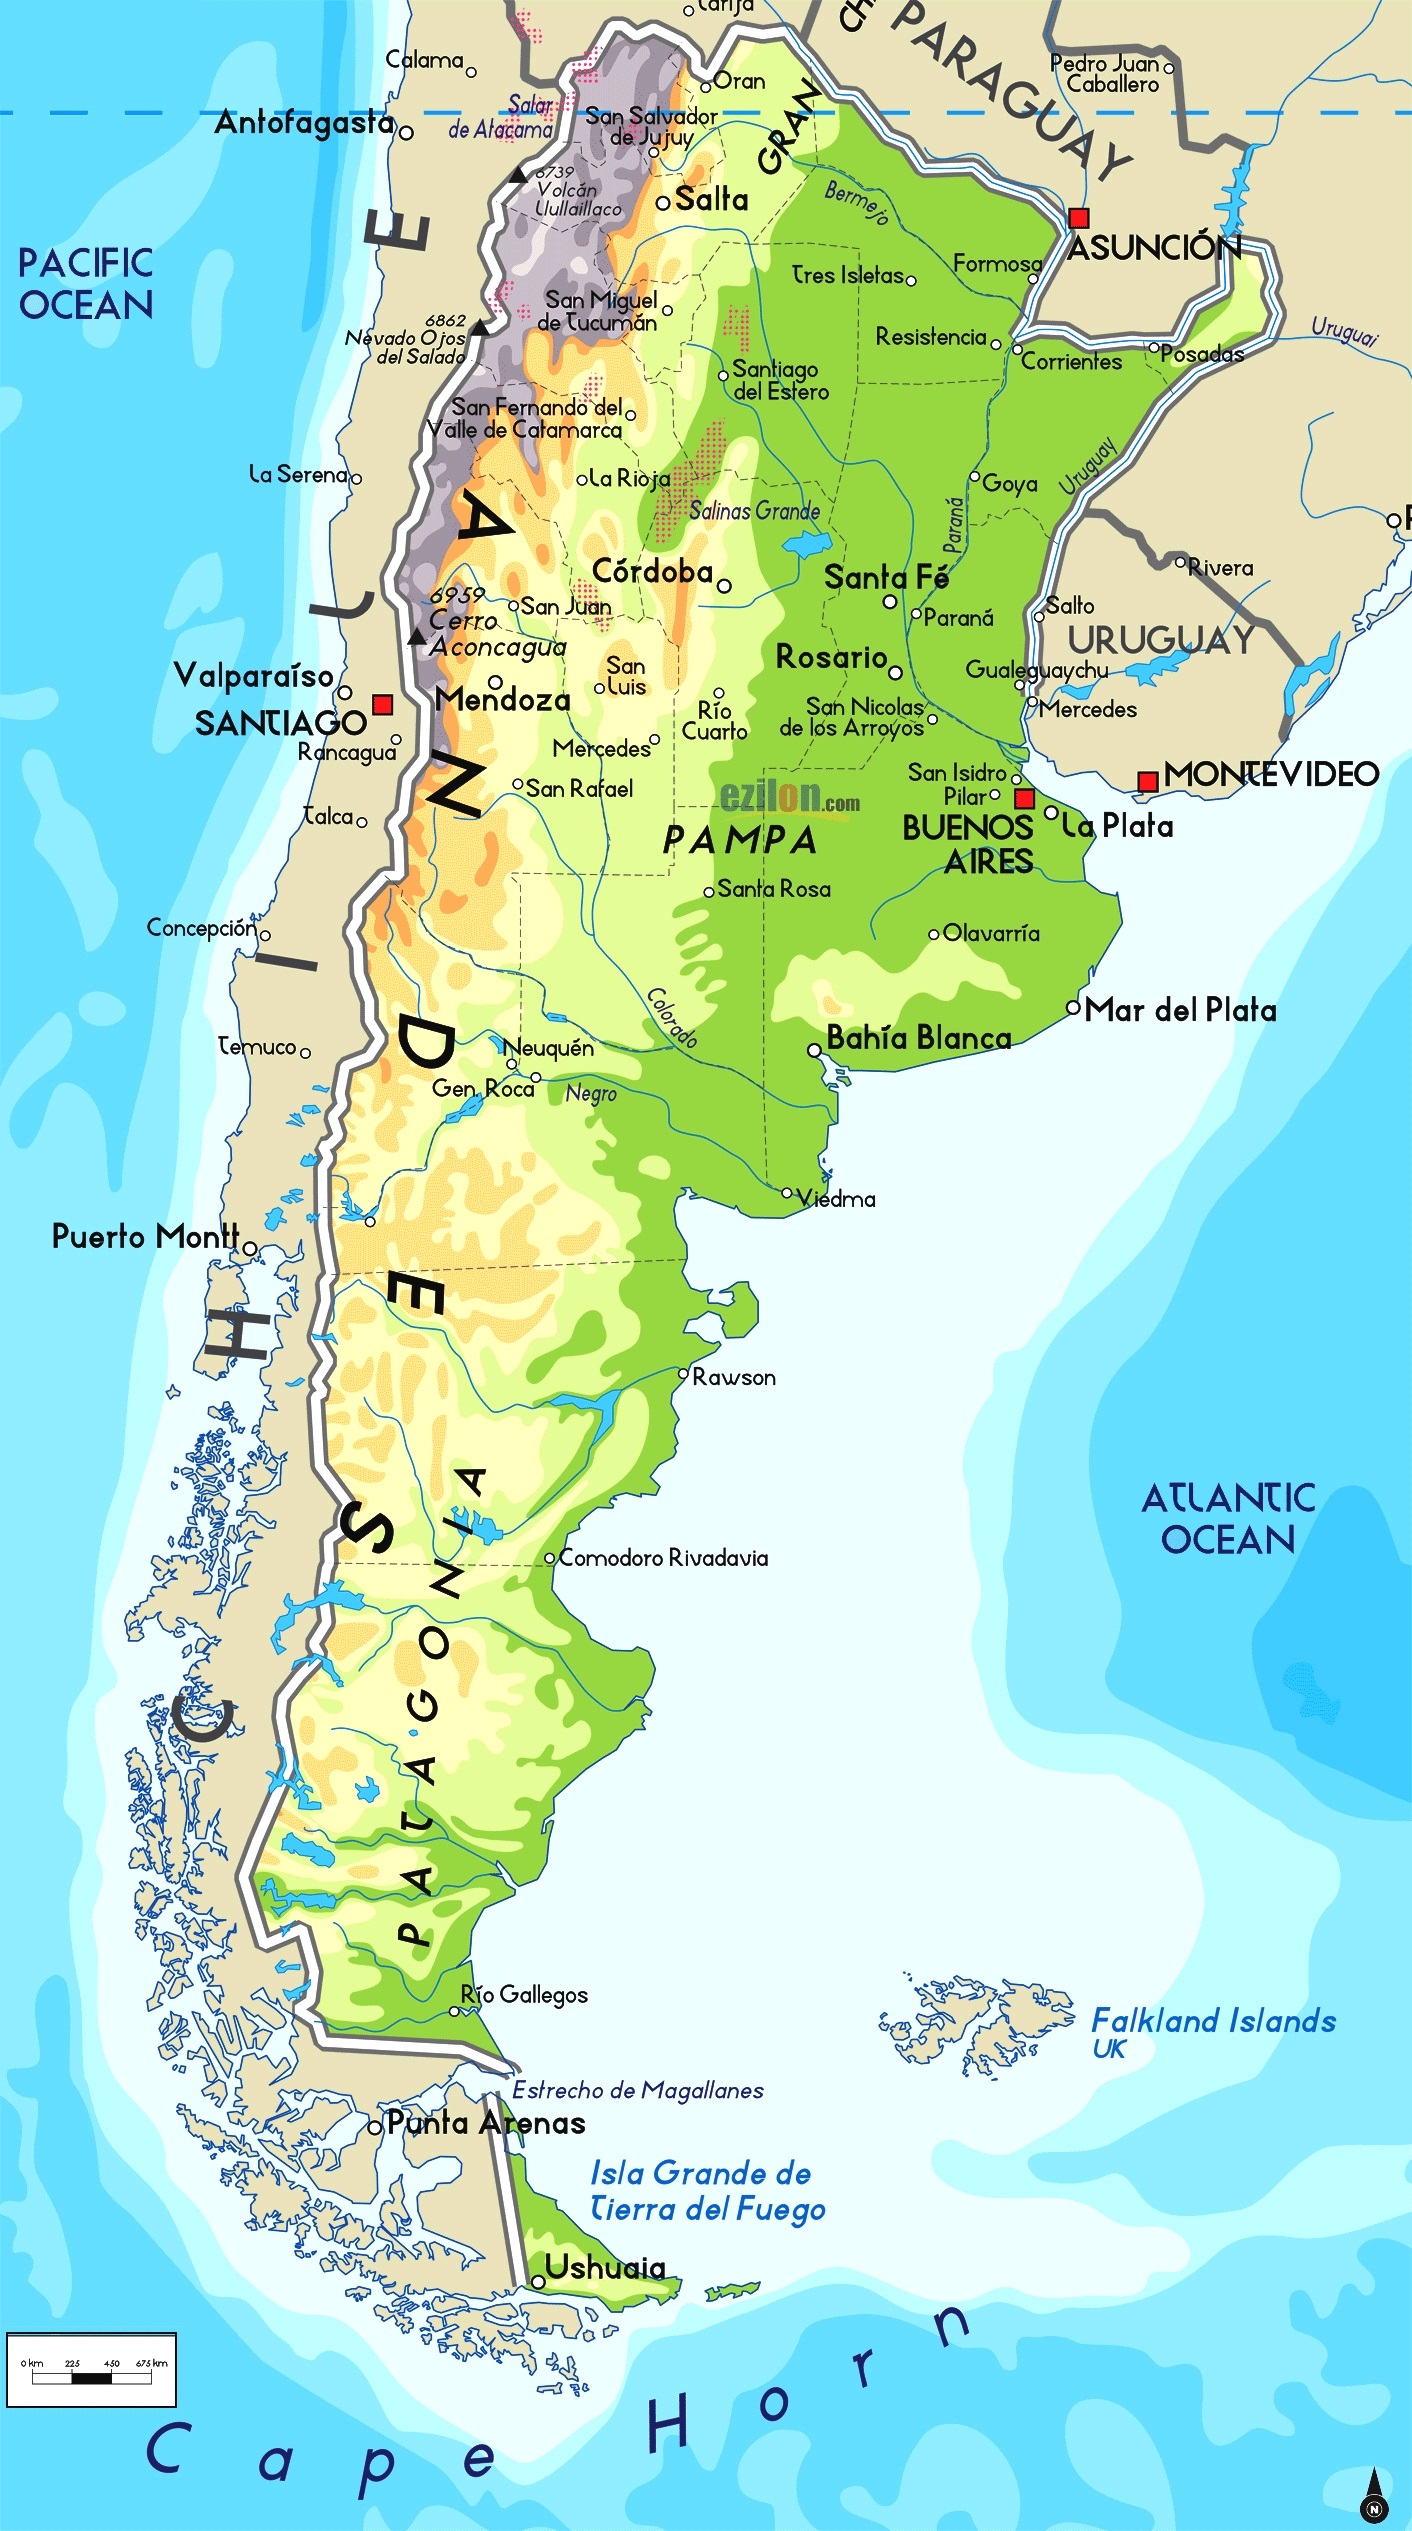 Mappa geografica dell'Argentina: Orografia, monti, fiumi, laghi e